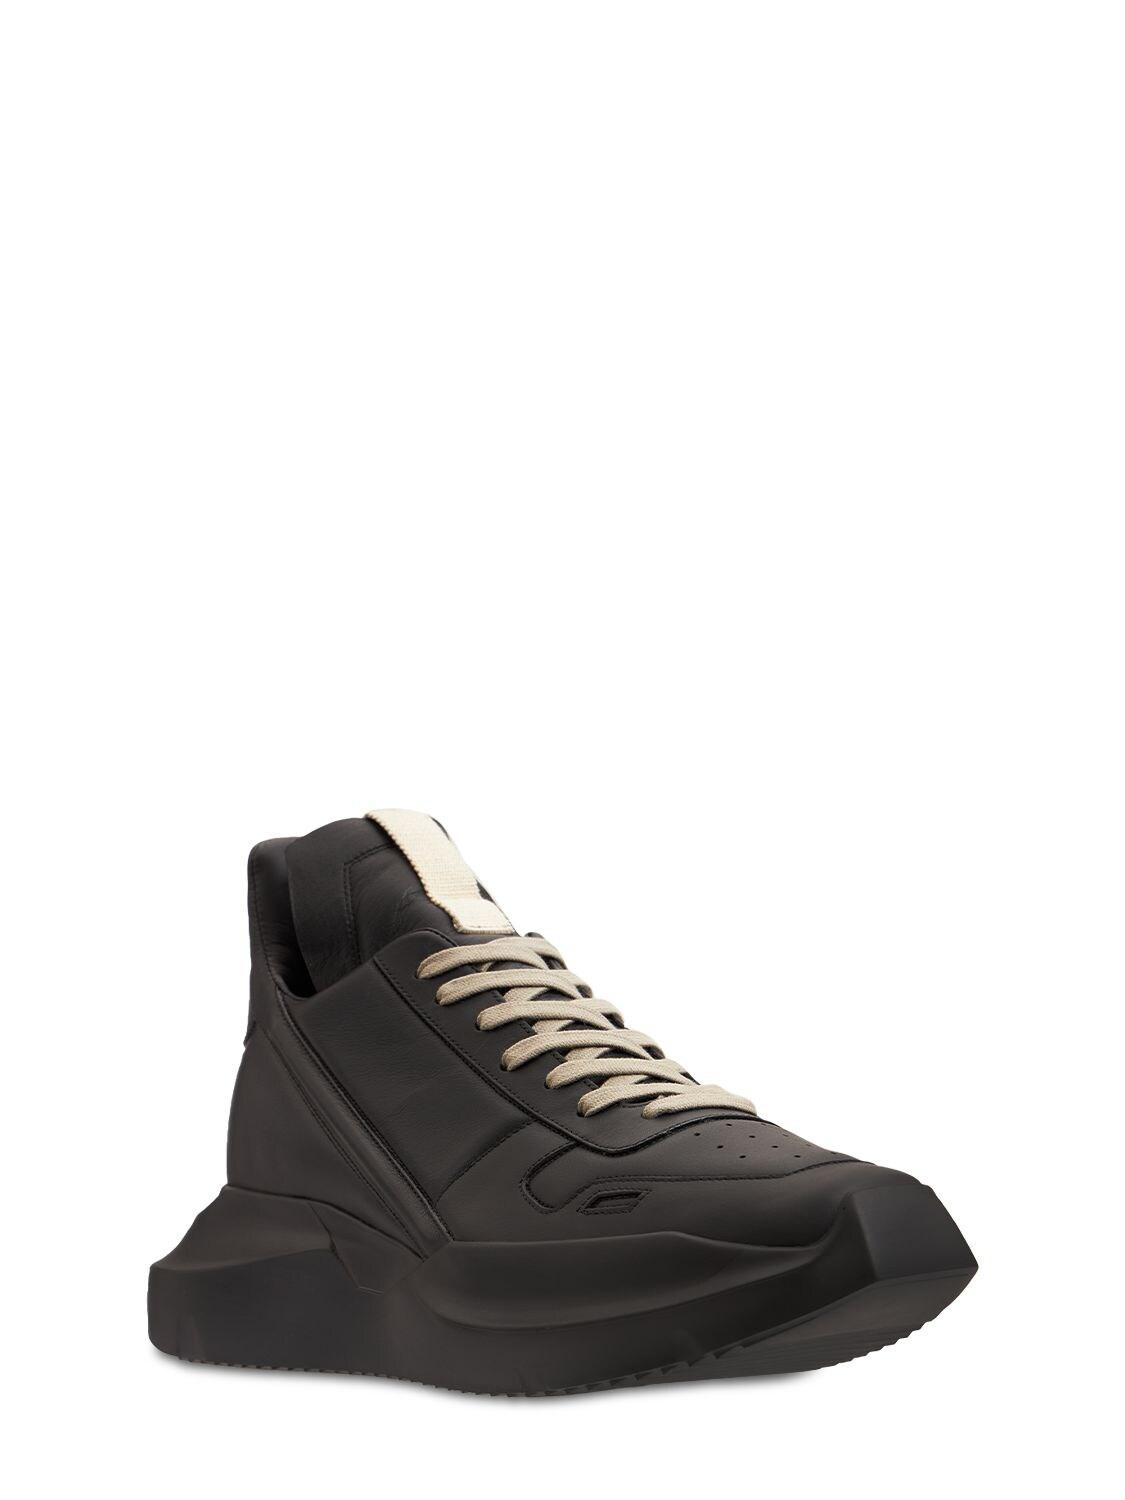 Rick Owens Geth Runner Grain Leather Sneakers in Black for Men | Lyst